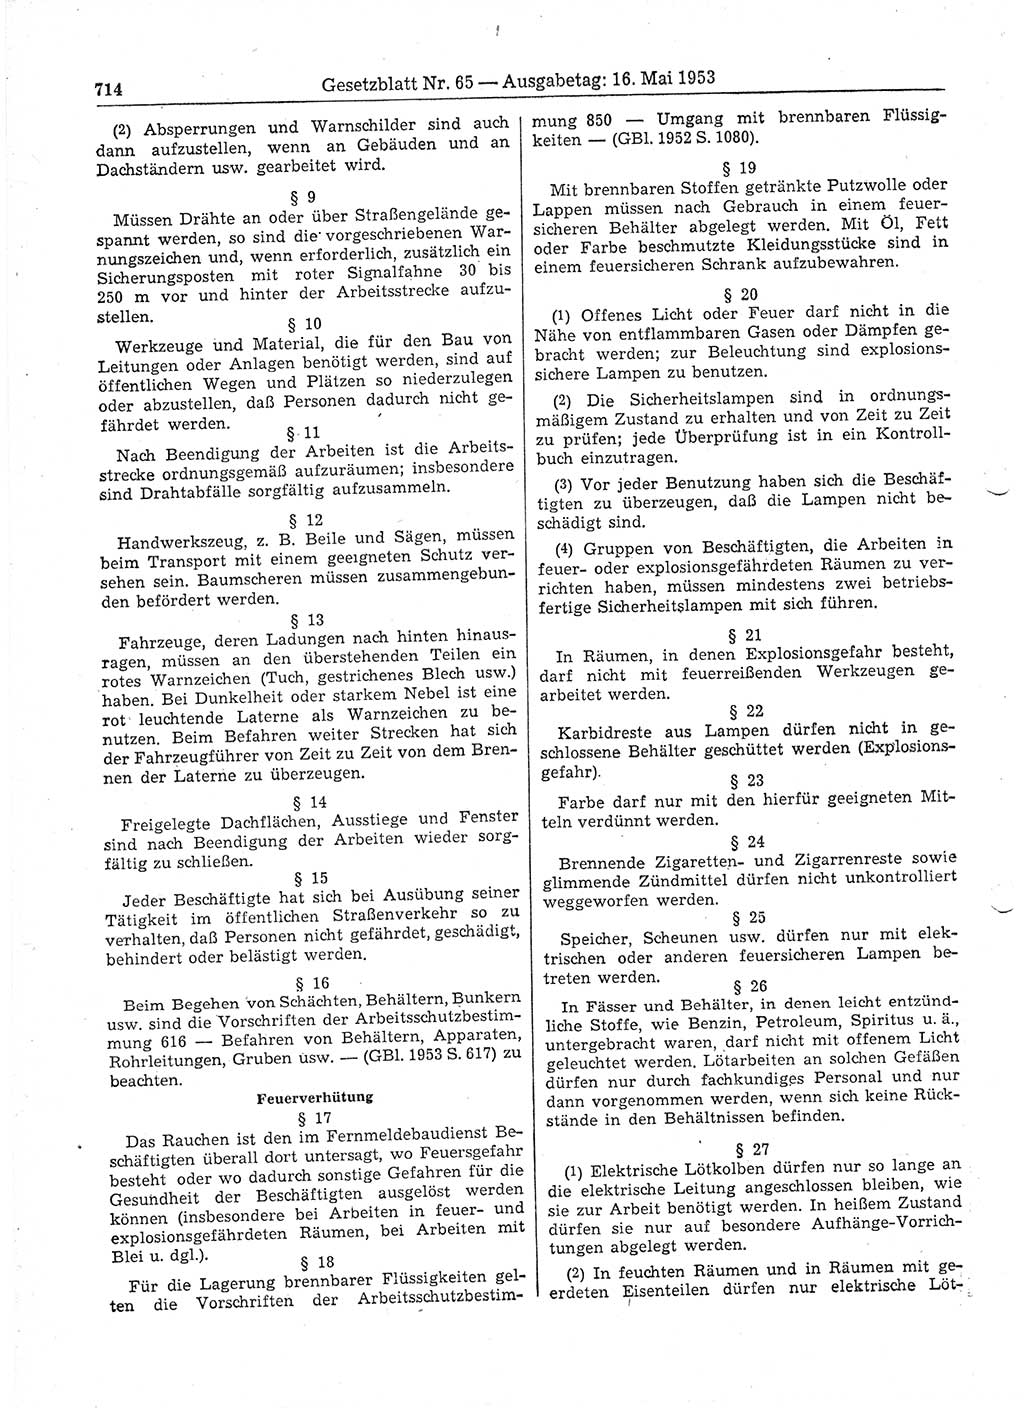 Gesetzblatt (GBl.) der Deutschen Demokratischen Republik (DDR) 1953, Seite 714 (GBl. DDR 1953, S. 714)